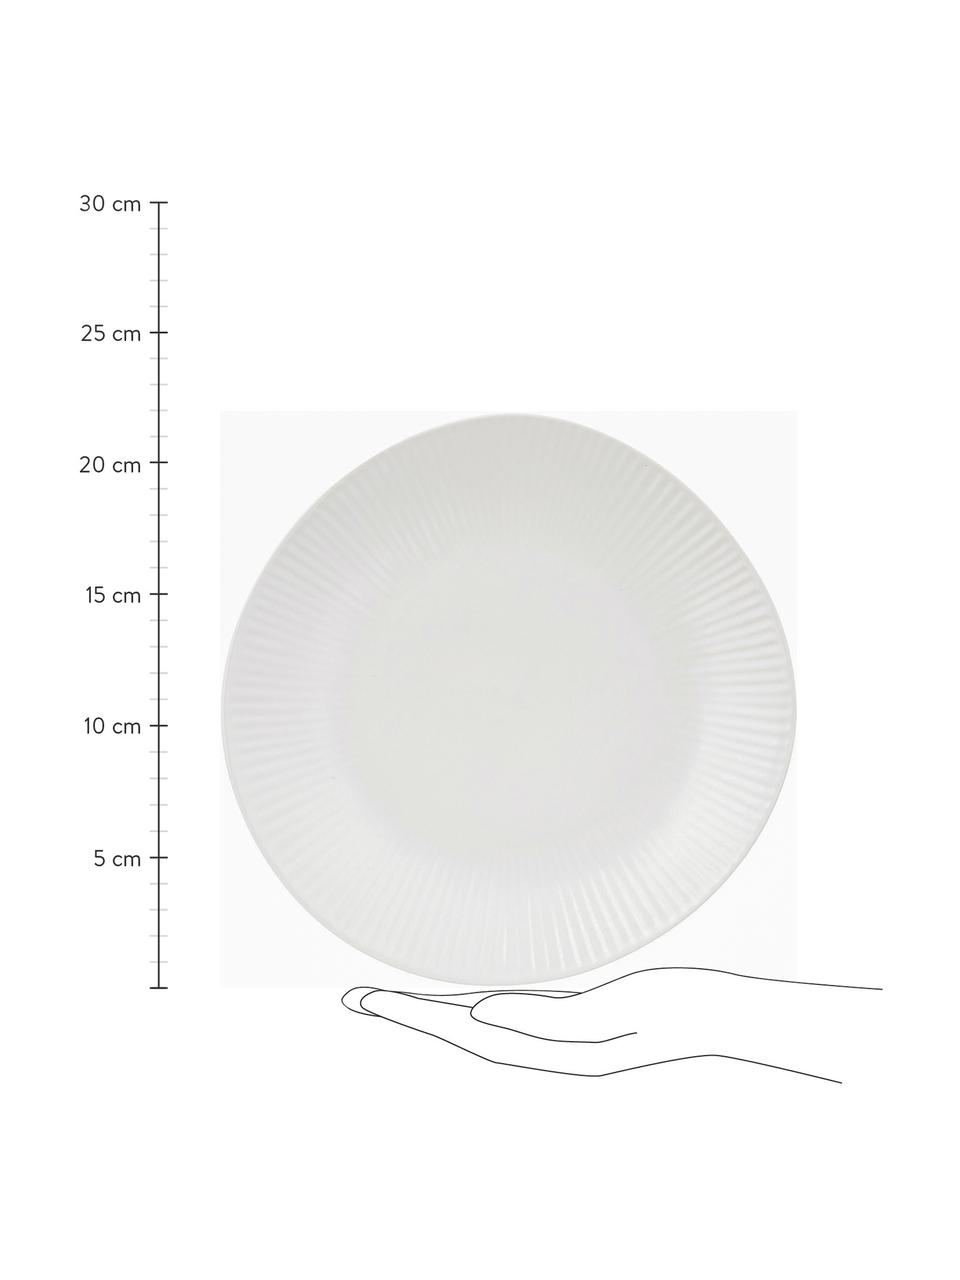 Handgemachte Dessertteller Sandvig mit leichtem Rillenrelief, 4 Stück, Porzellan, durchgefärbt, Gebrochenes Weiss, Ø 22 cm